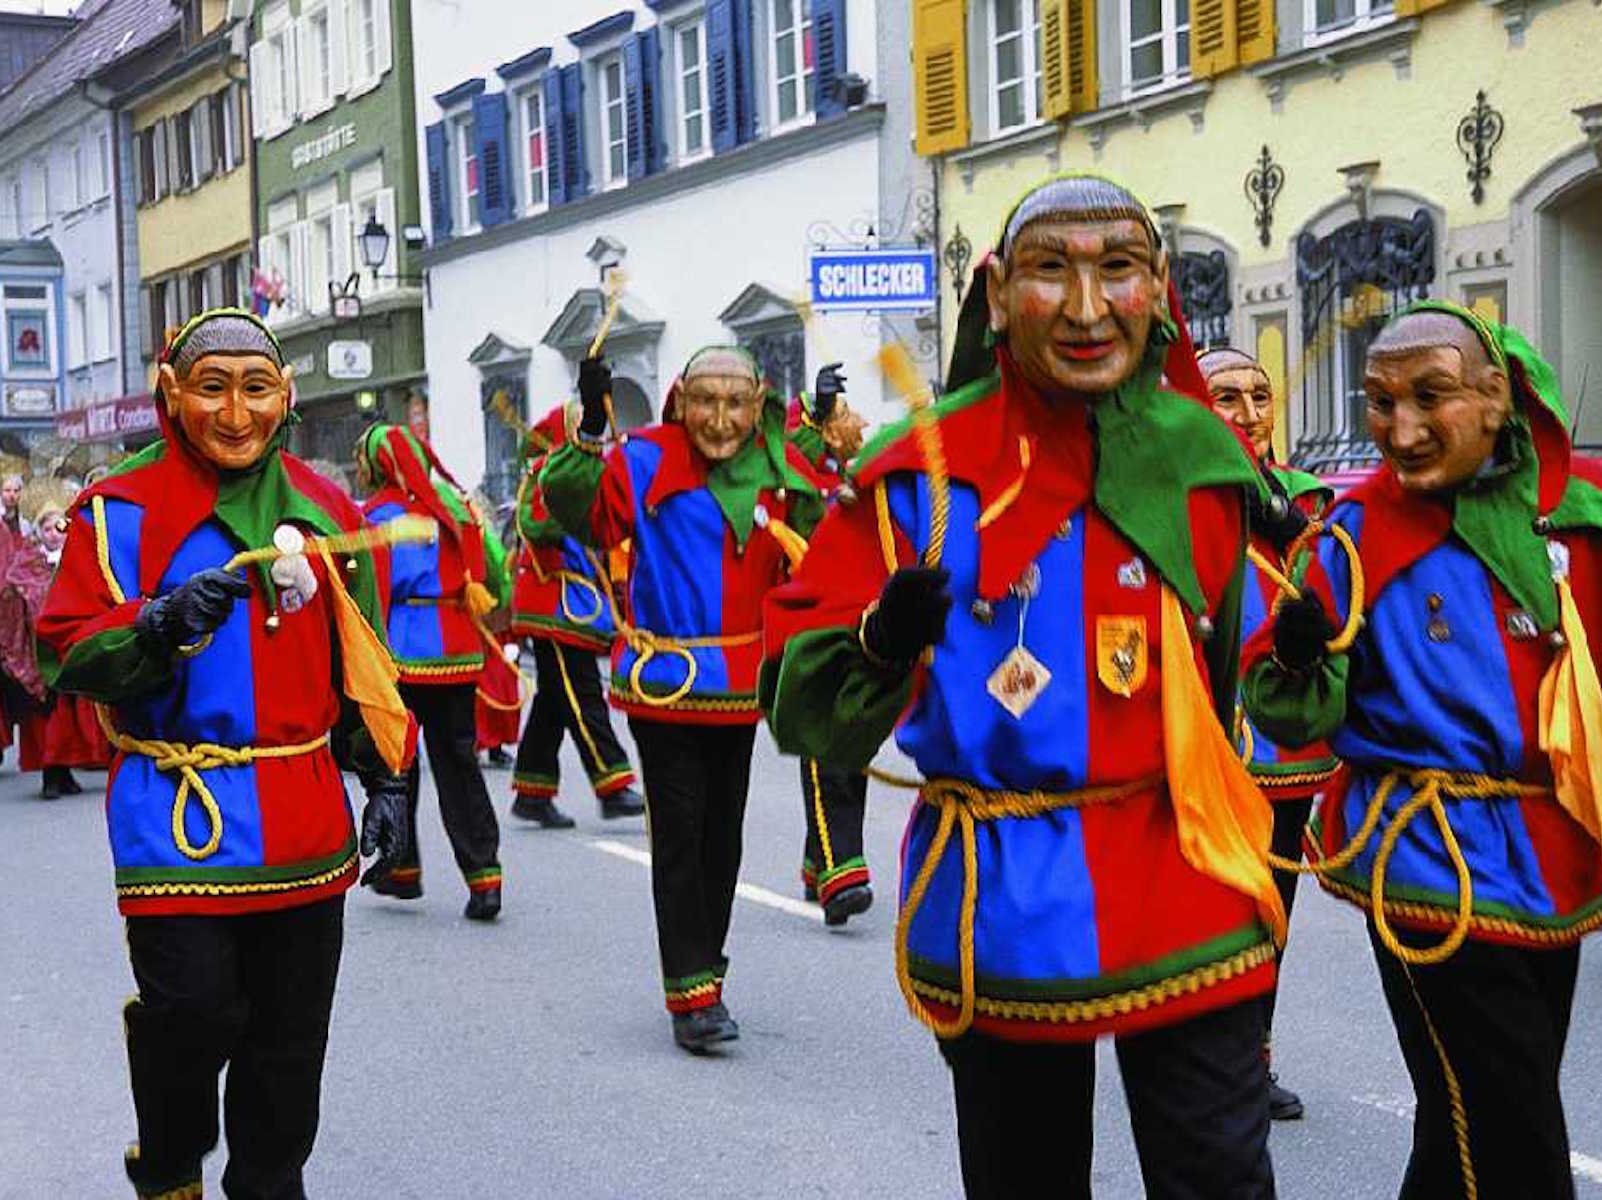  Grupo carnaval "Laufnarren" 